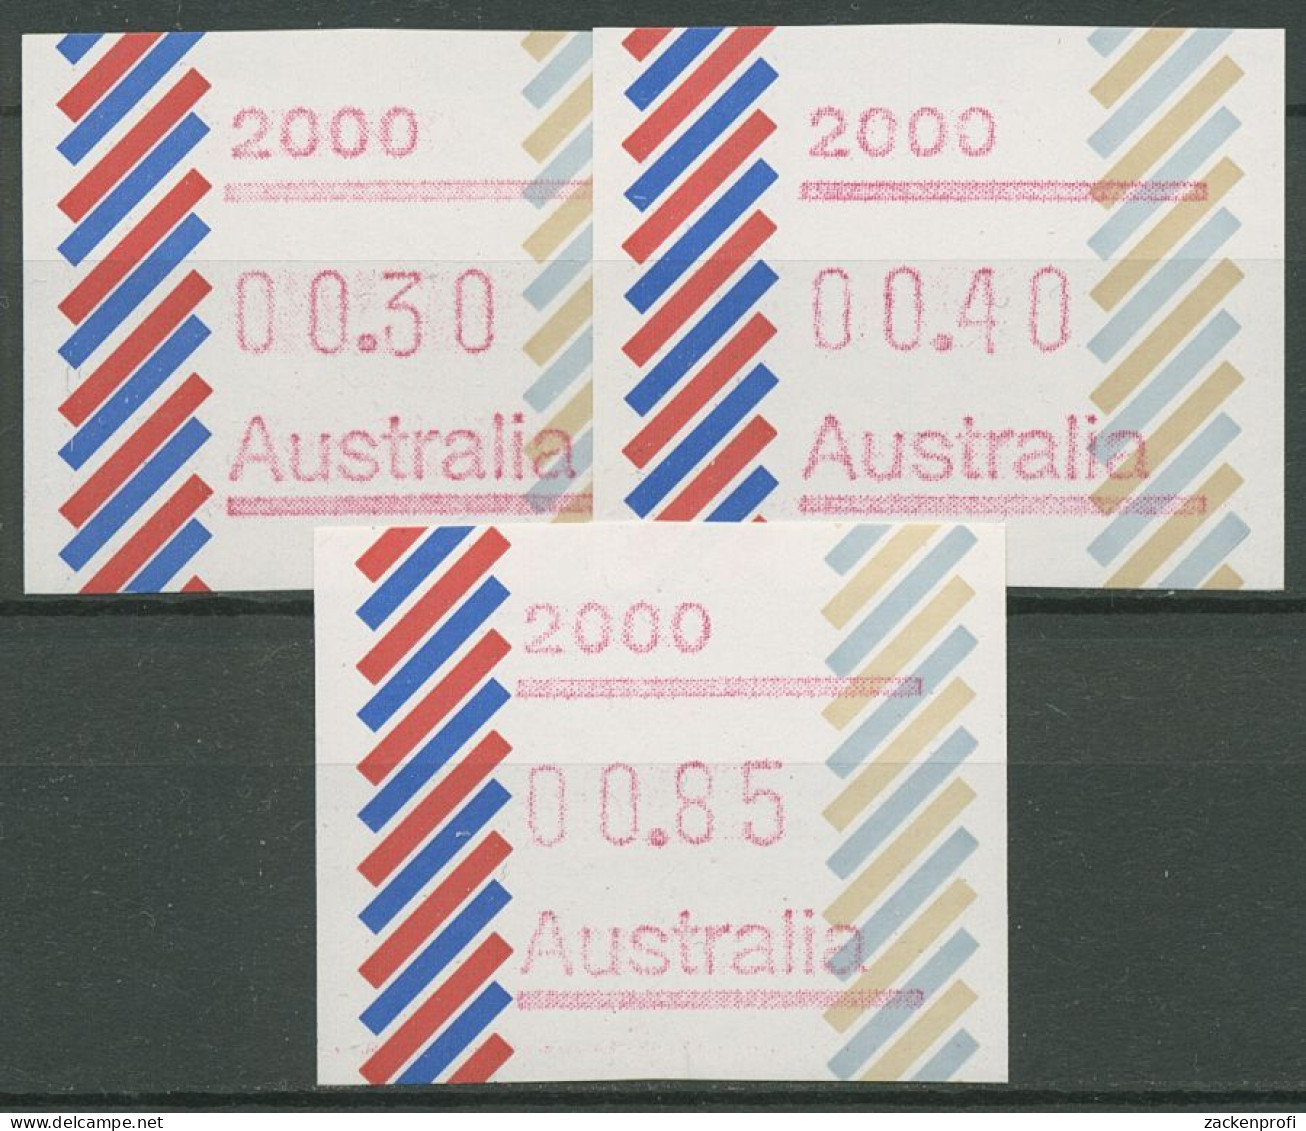 Australien 1984 Balken Tastensatz Automatenmarke 1 S1, 2000 Postfrisch - Vignette [ATM]